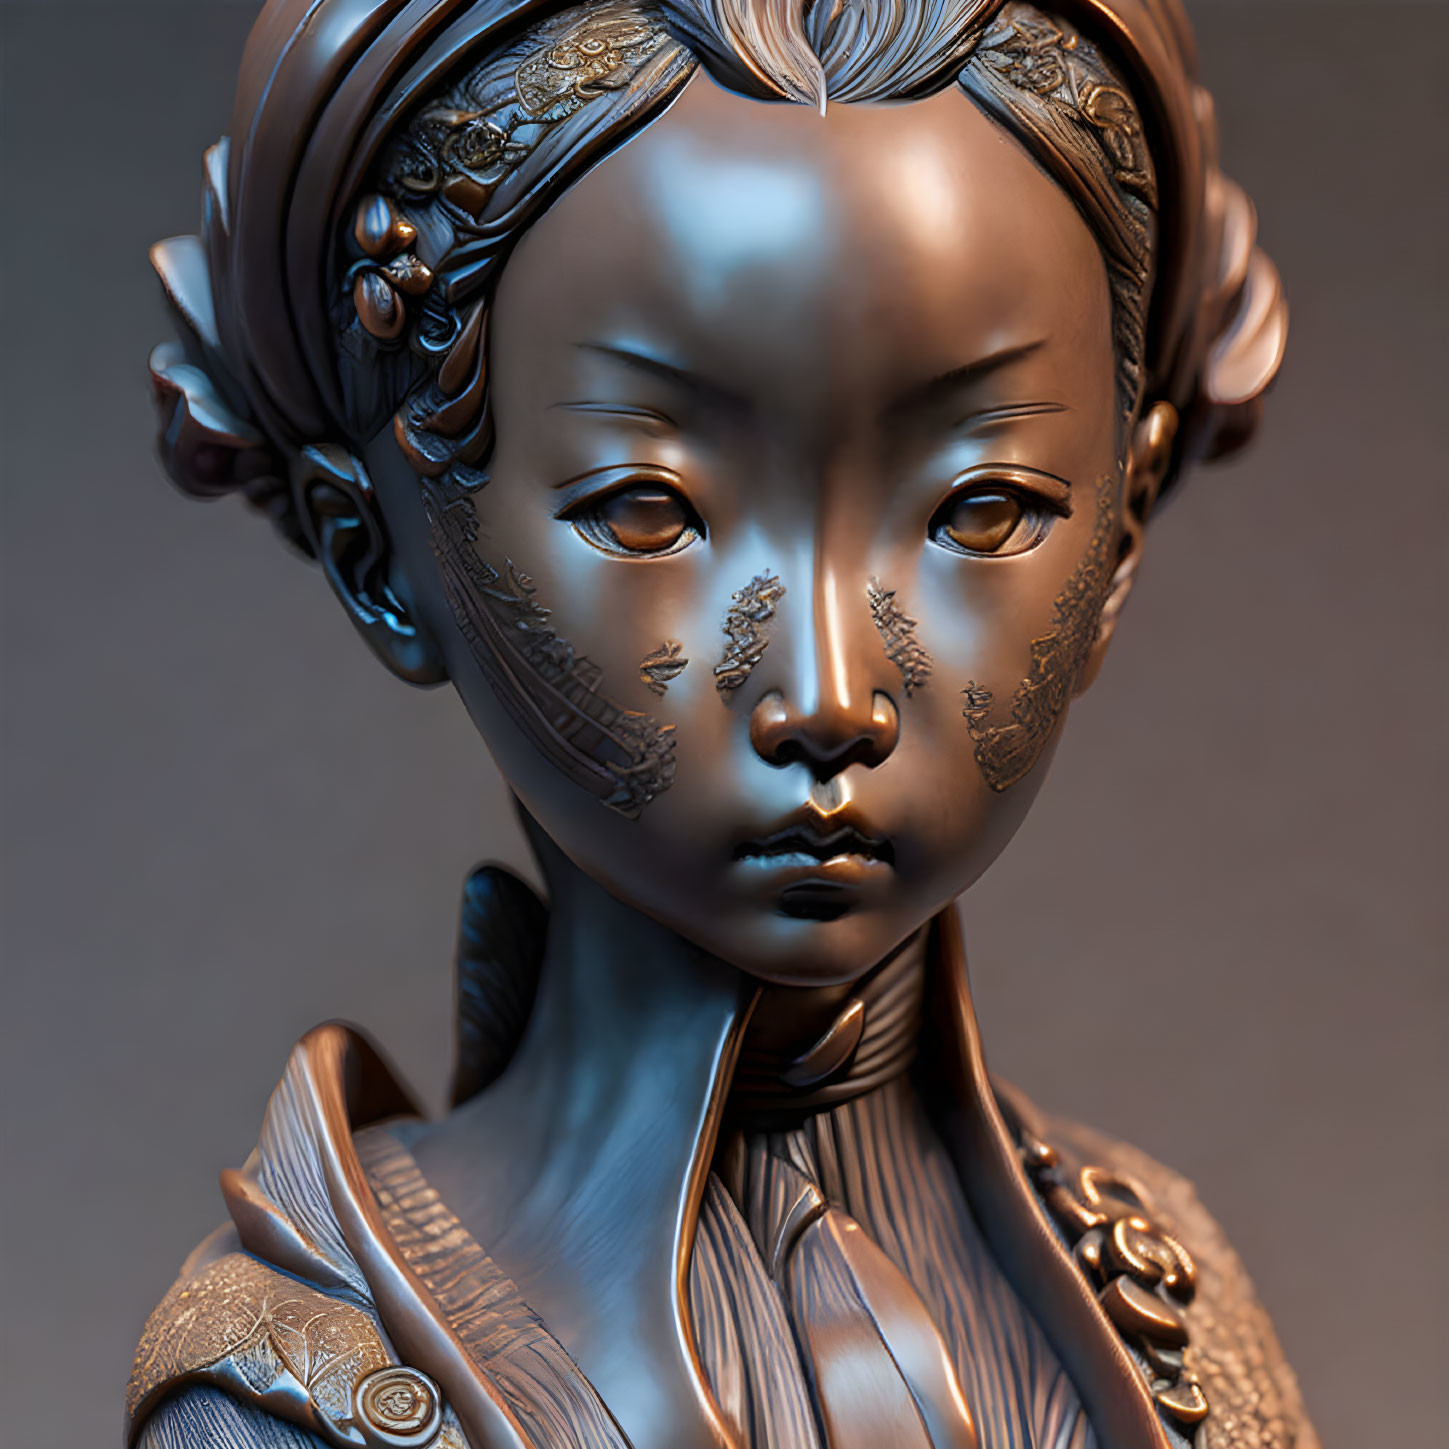 Gray alien girl as a Netsuke Sculpture